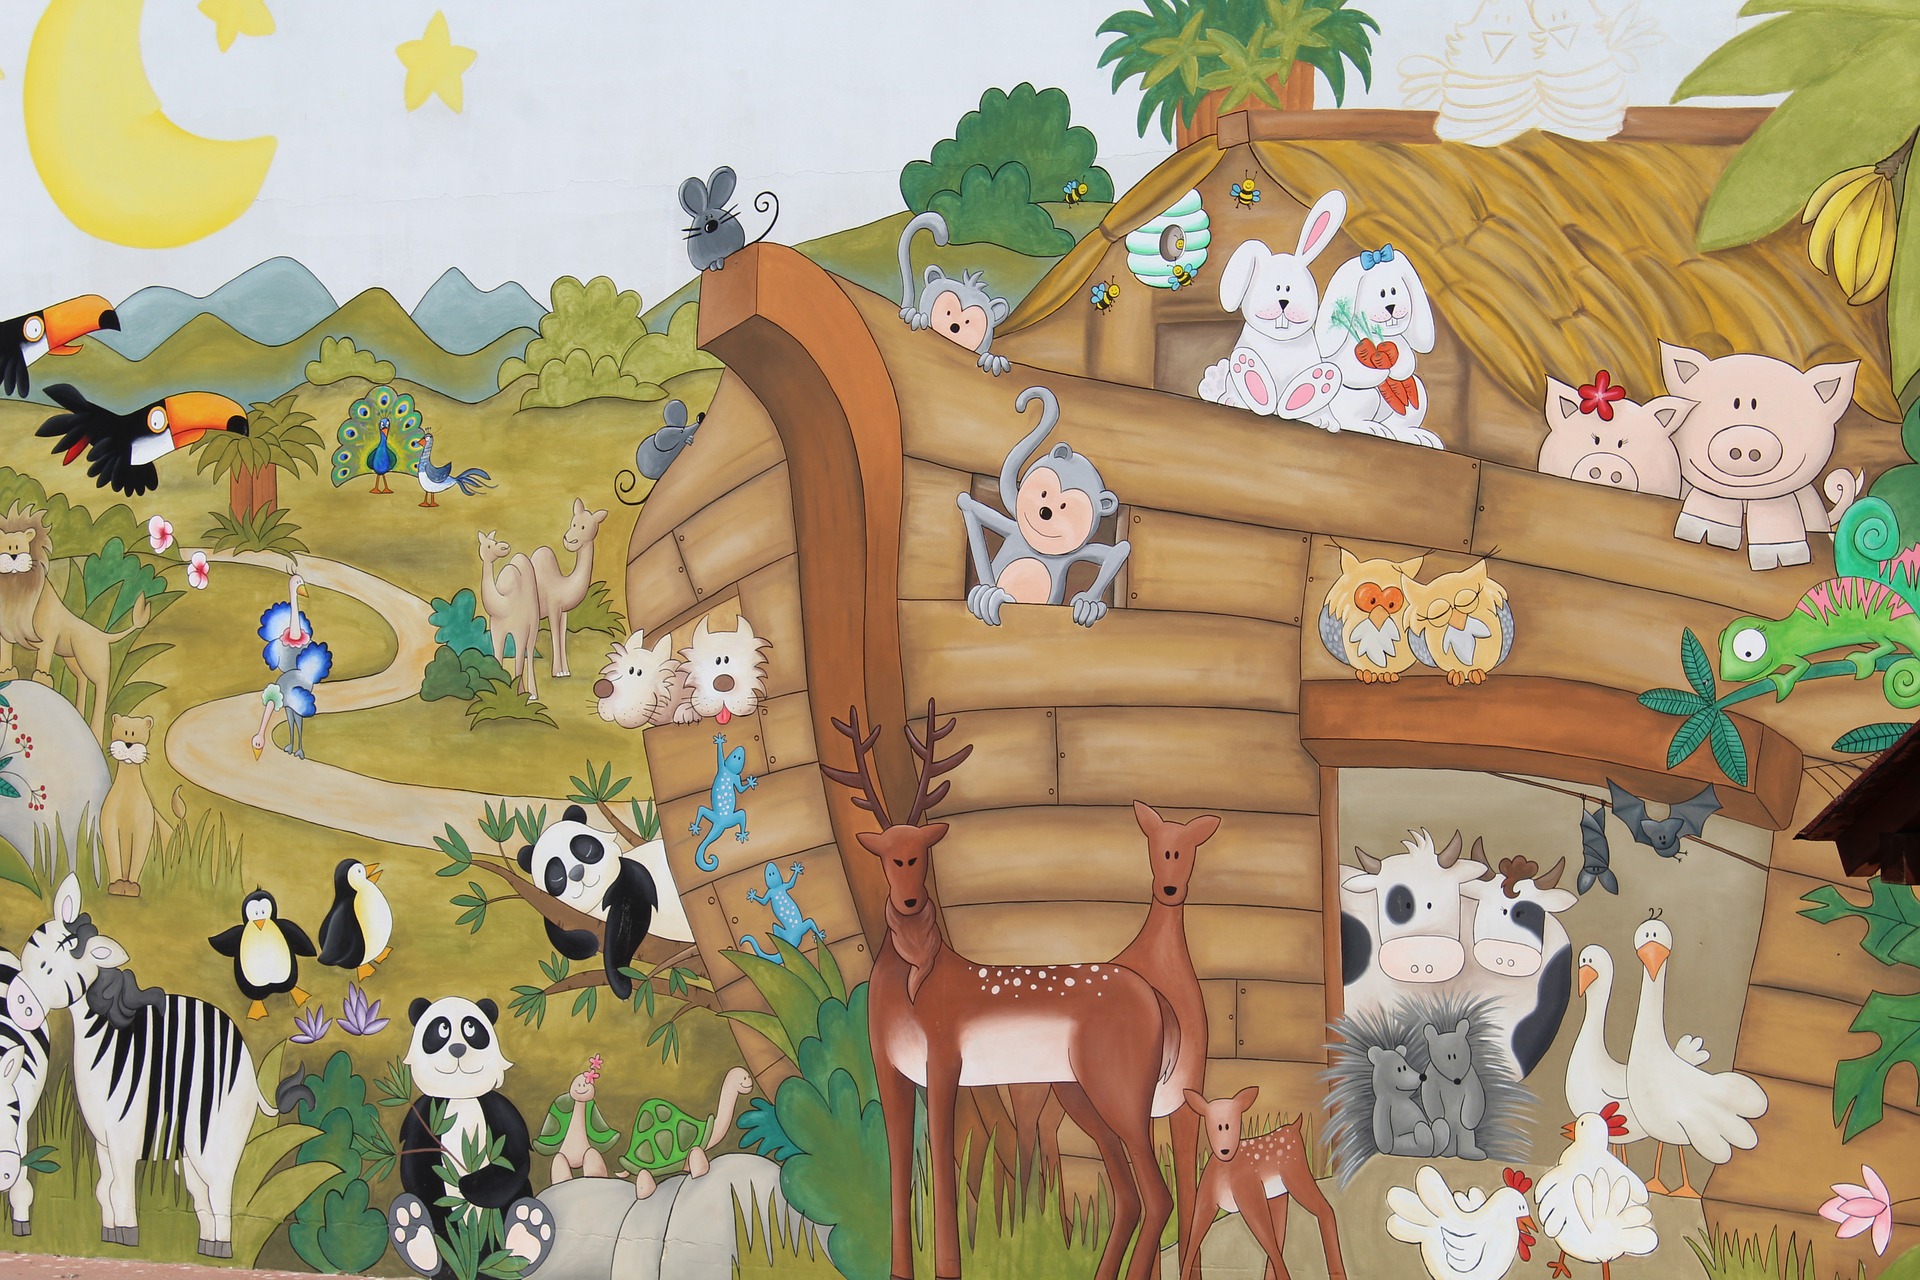 Eläimiä Nooan arkissa.